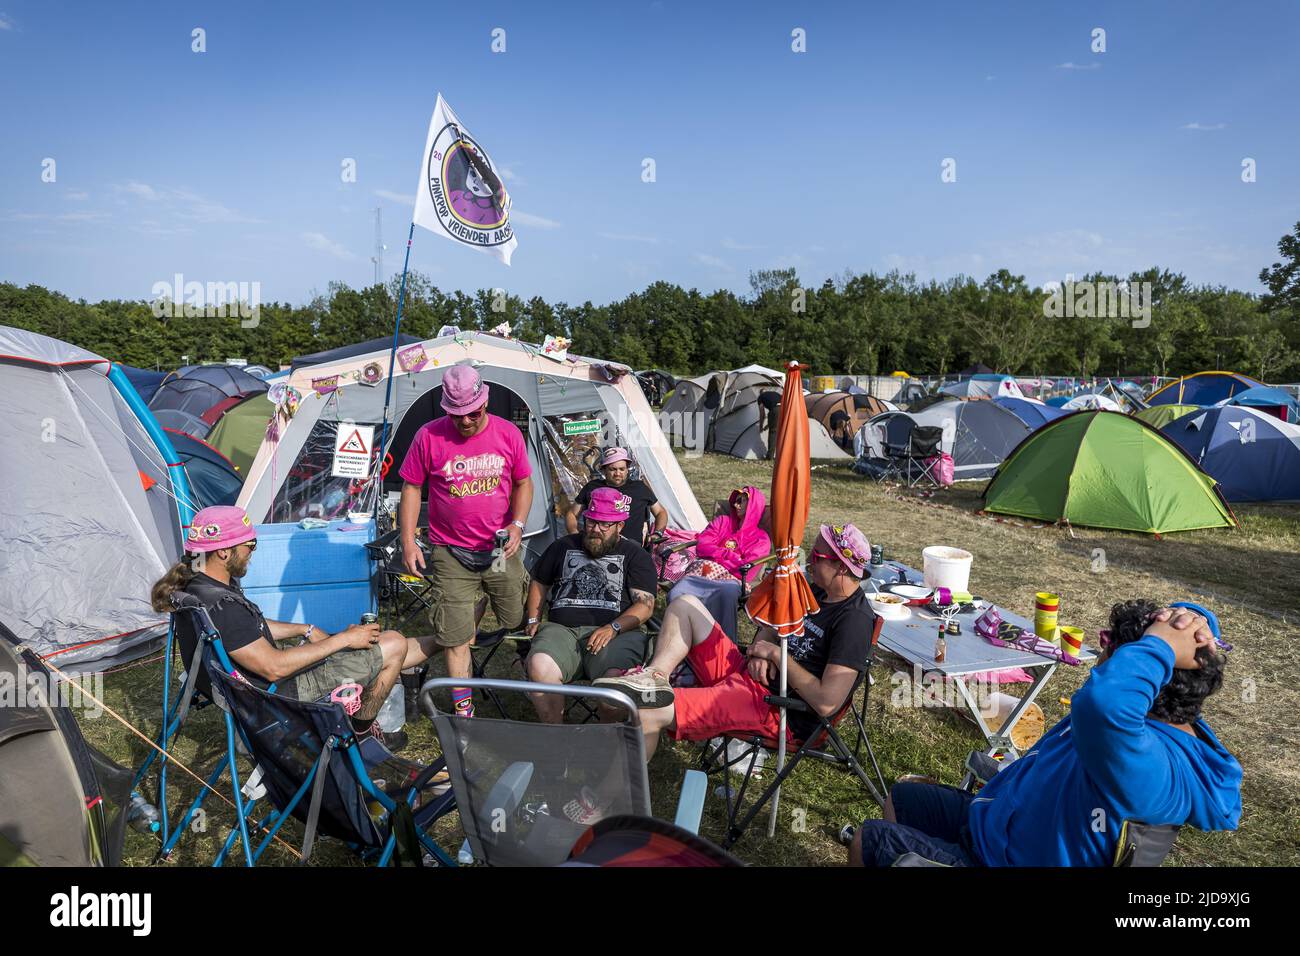 2022-06-19 18:47:40 LANDGRAAF - Fête des goeurs au camping pendant le  troisième jour du festival de musique Pinkpop. ANP MARCEL VAN HOORN  pays-bas - belgique sortie Photo Stock - Alamy